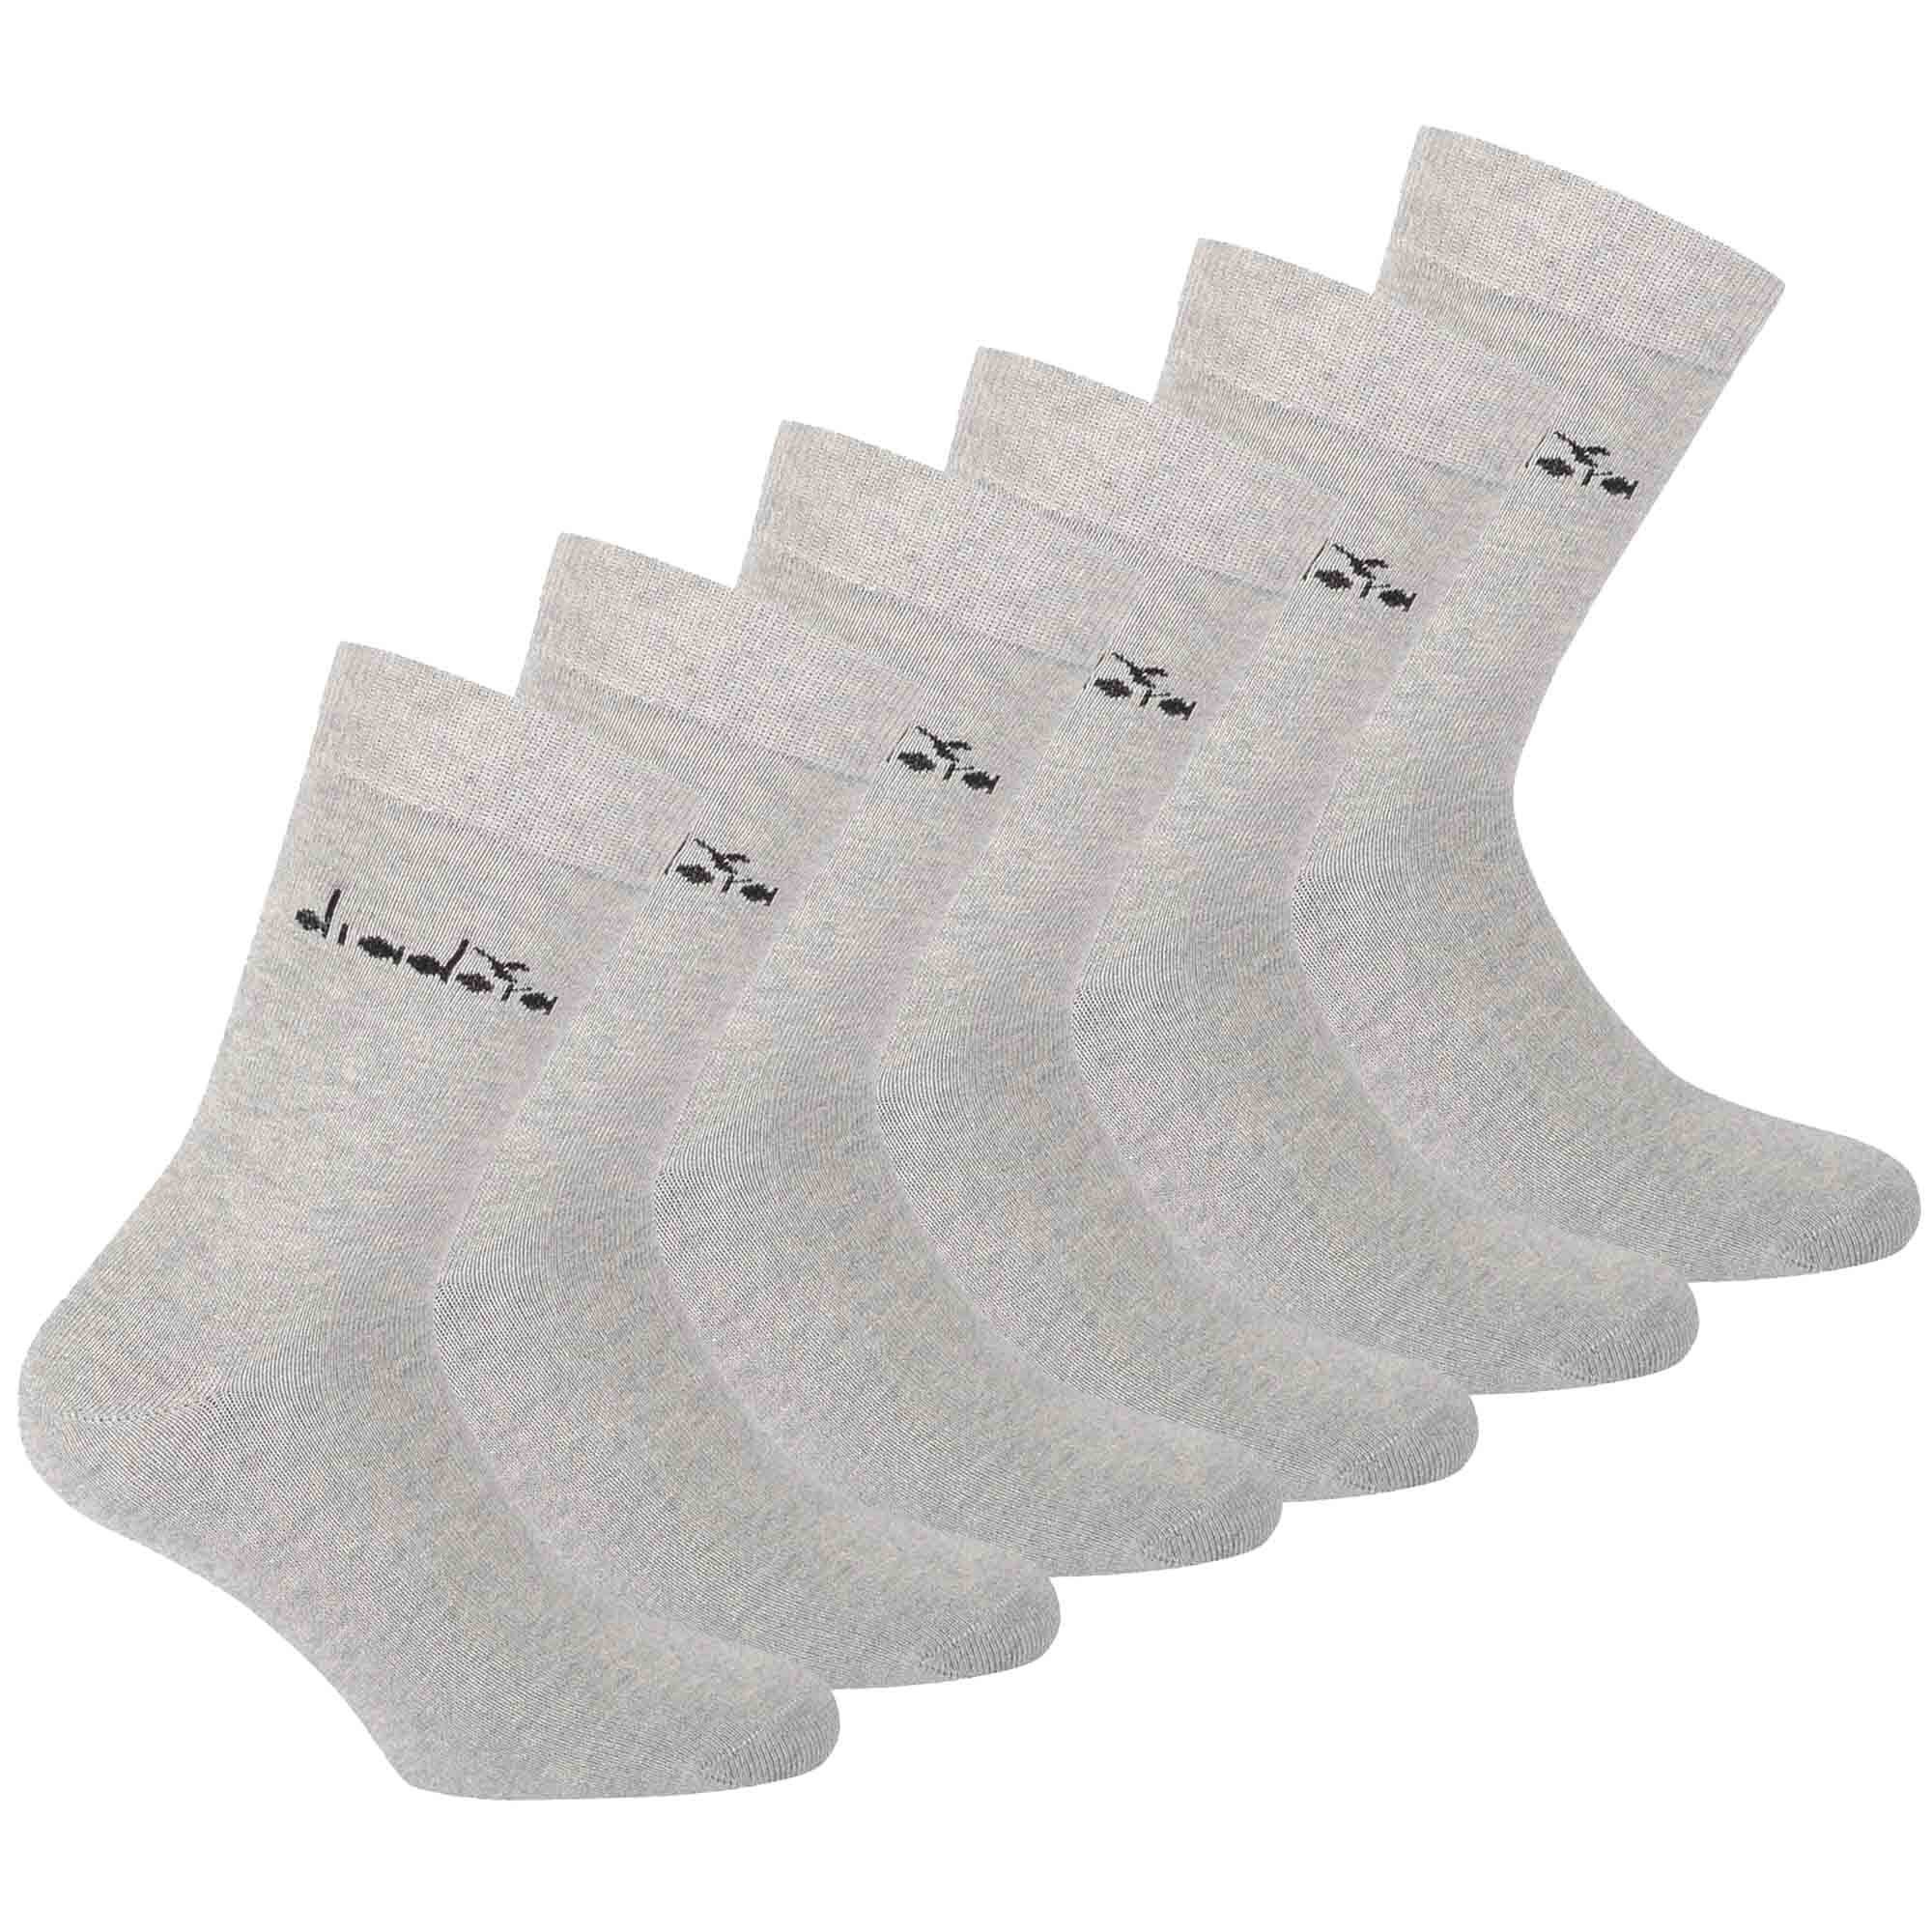 Diadora Sportsocken Unisex Socken, 6er Pack - Sportsocken, Baumwolle Hellgrau